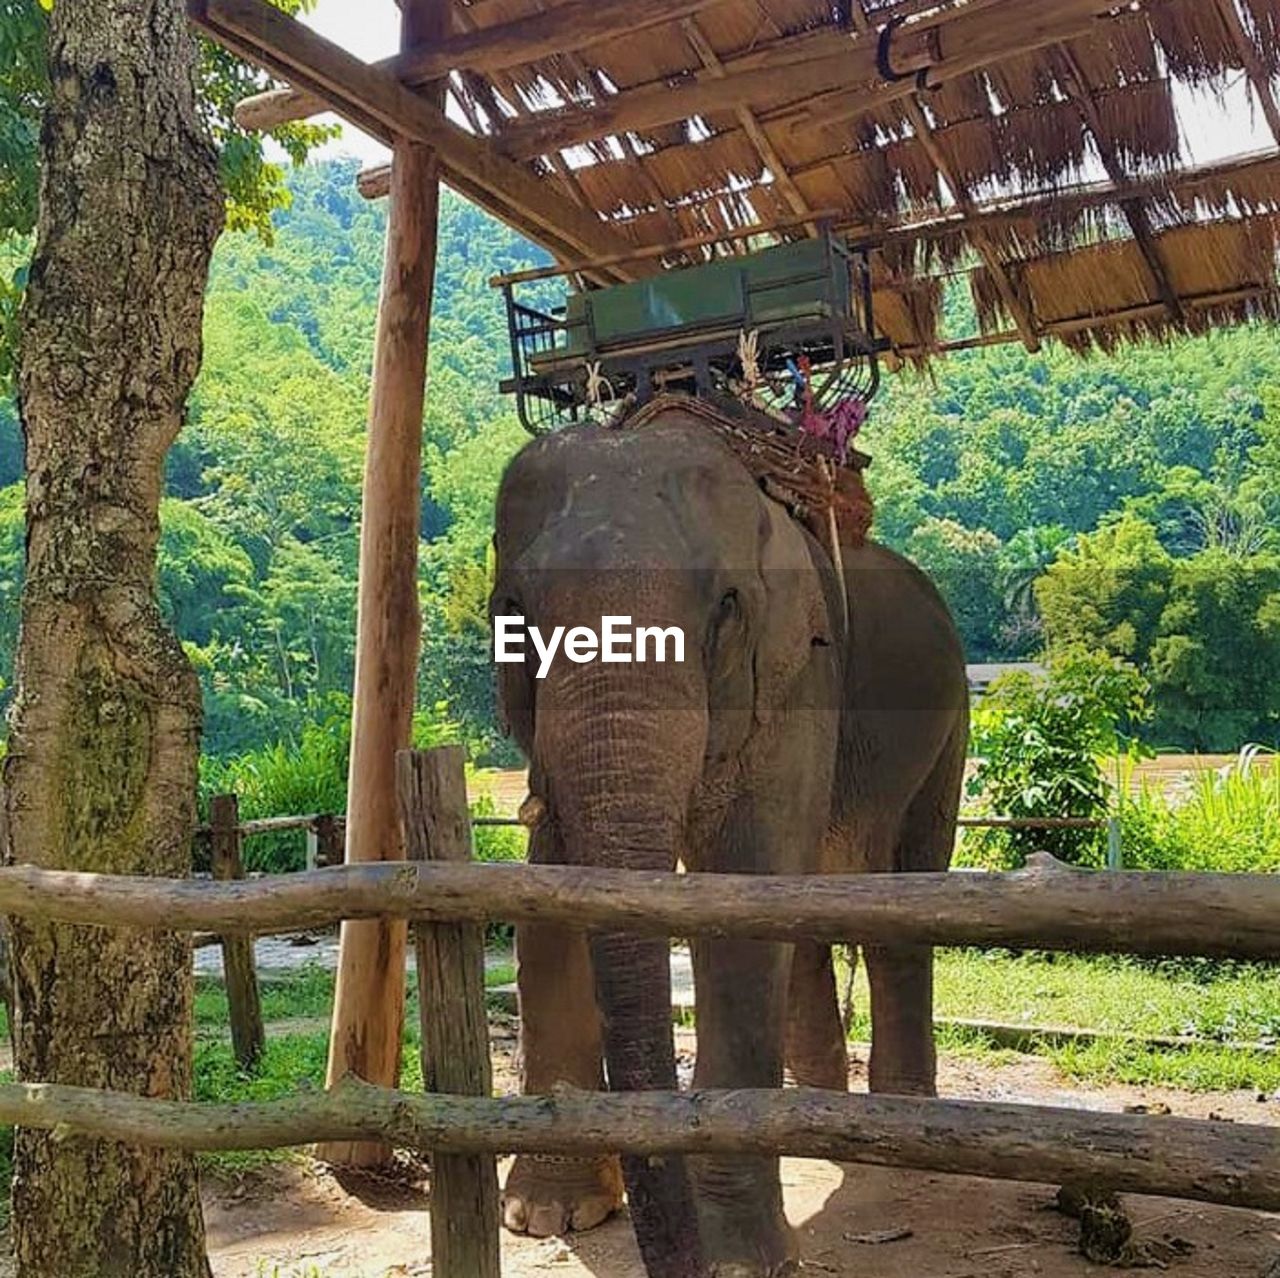 VIEW OF ELEPHANT IN GARDEN